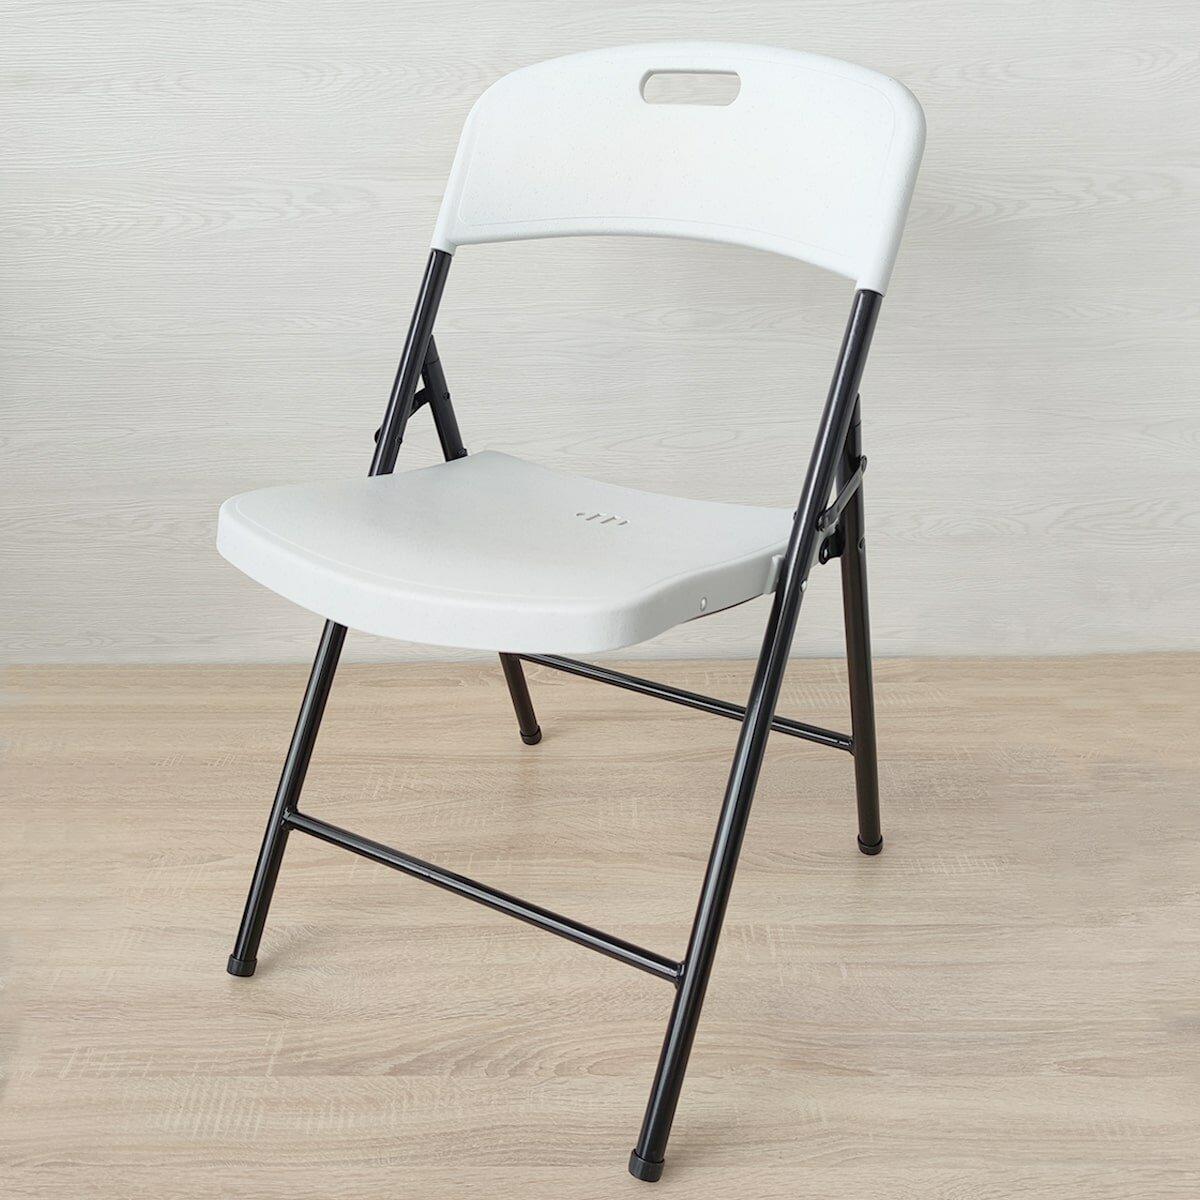 Стілець складаний, стілець туристичний, Складаний дачний стілець, стілець для відпочинку на природі, складаний стілець 46х52х79 см